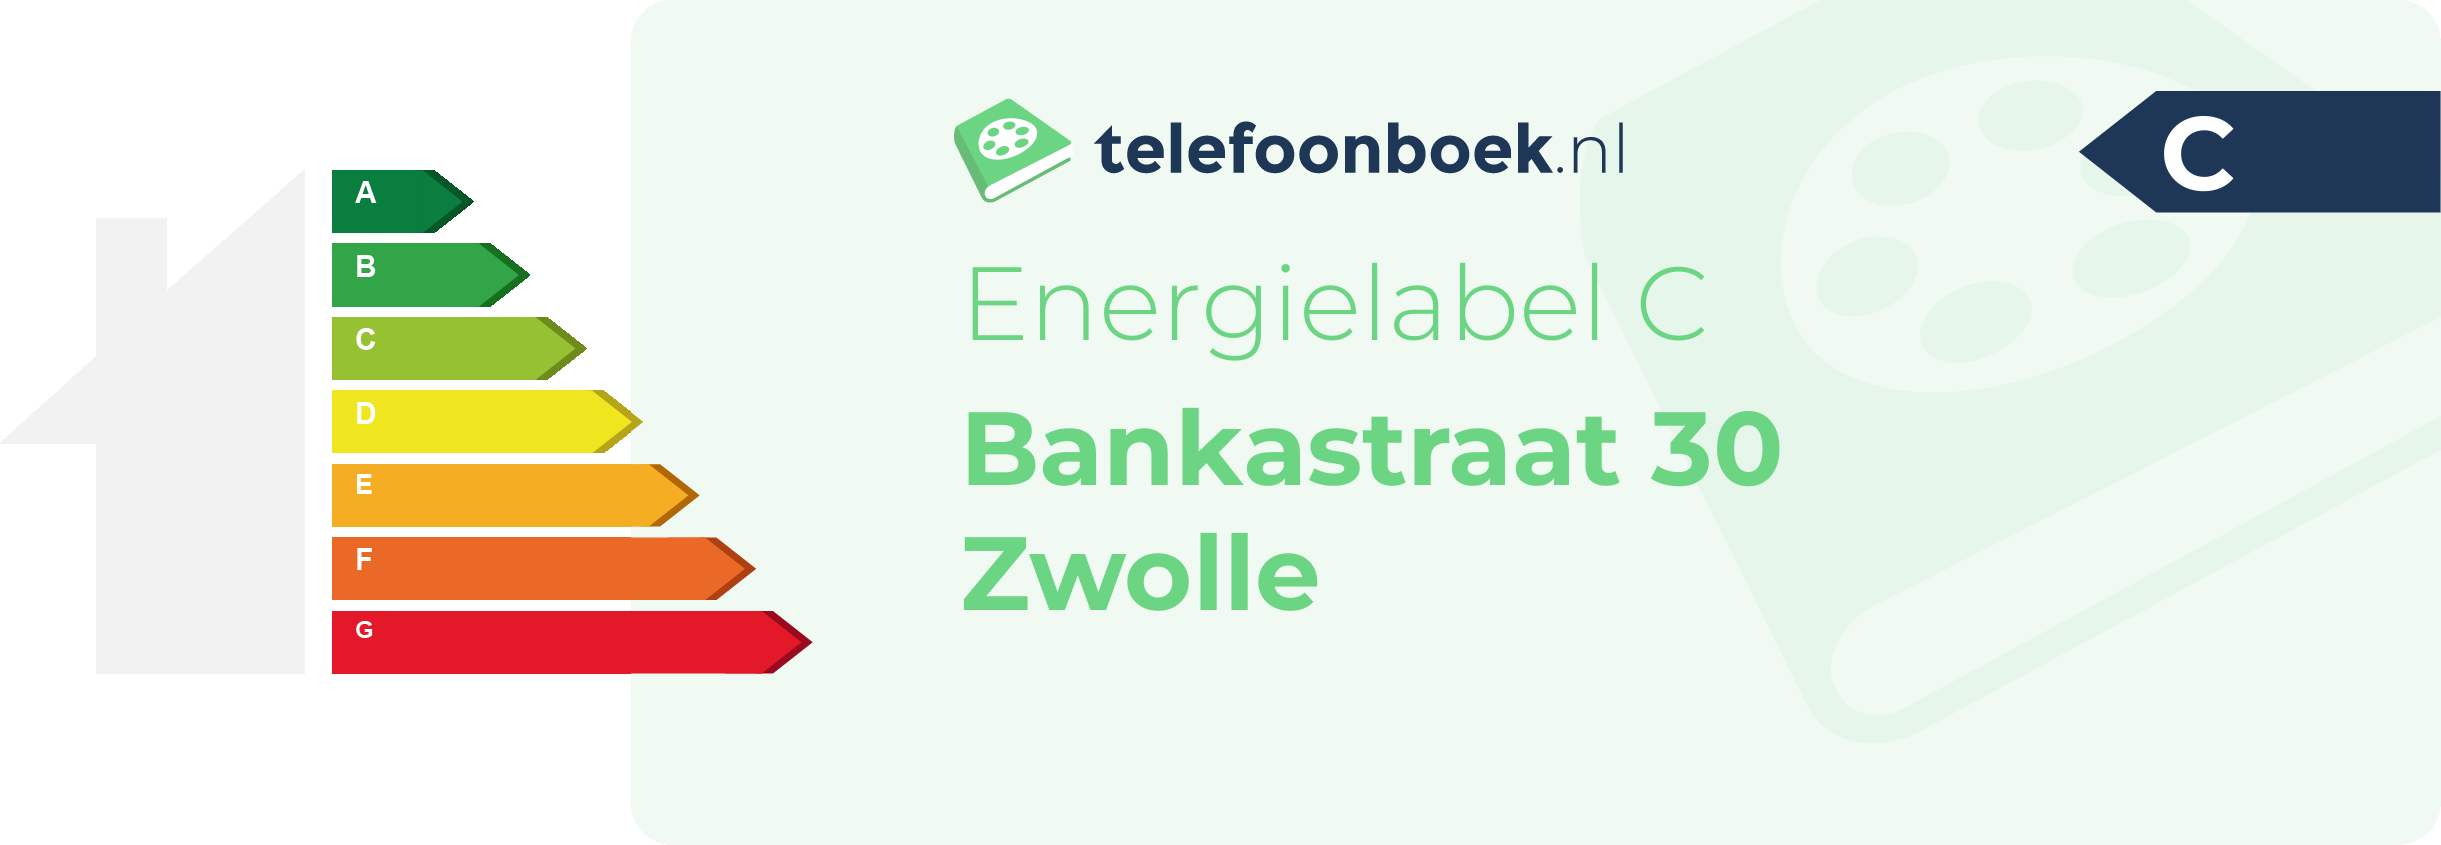 Energielabel Bankastraat 30 Zwolle